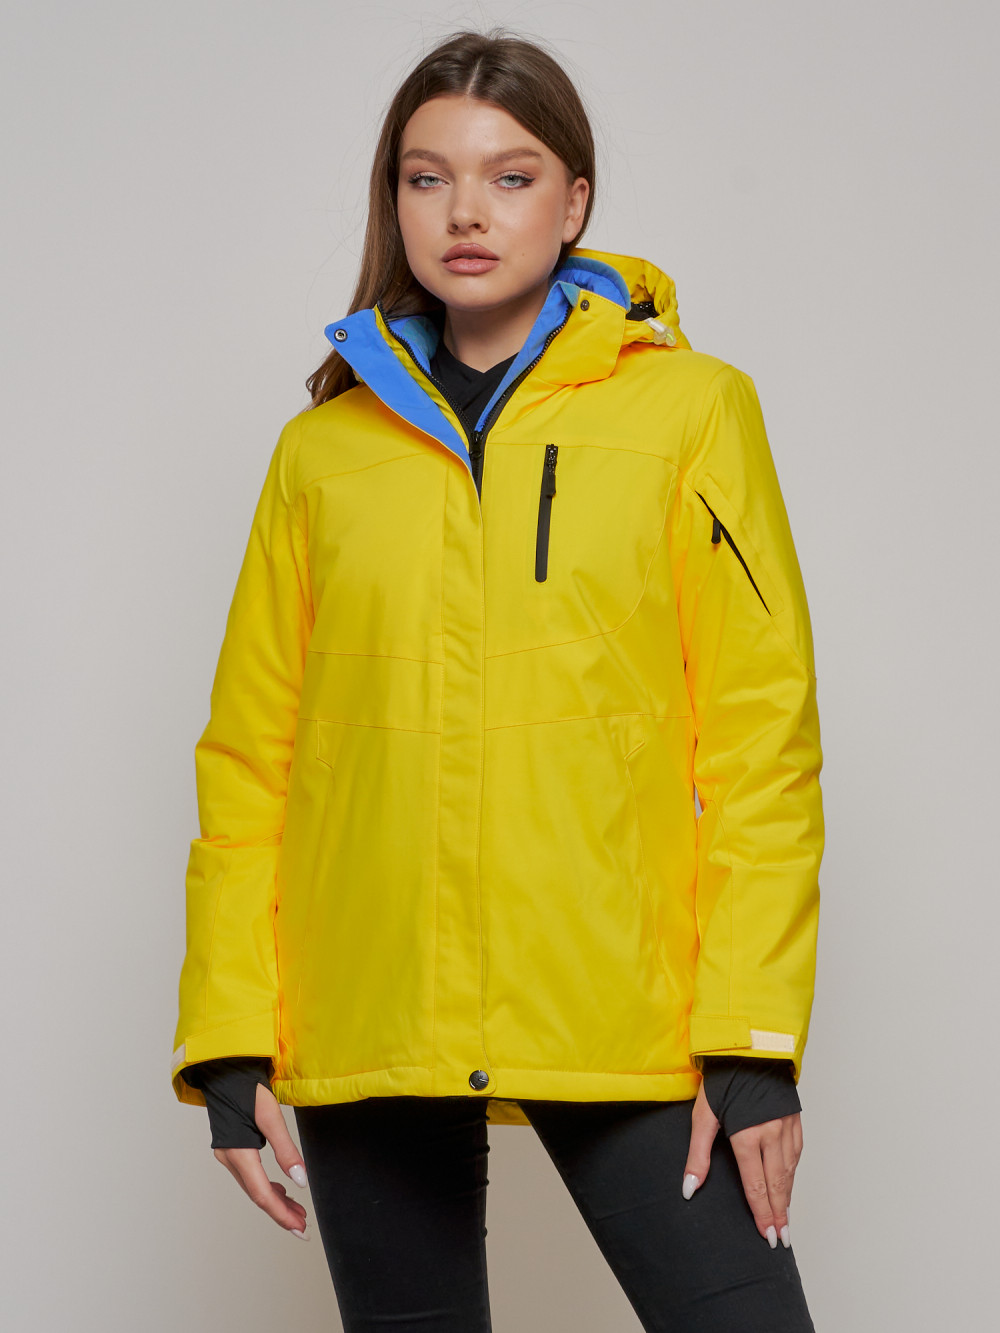 Купить оптом Горнолыжная куртка женская зимняя желтого цвета 05J в Екатеринбурге